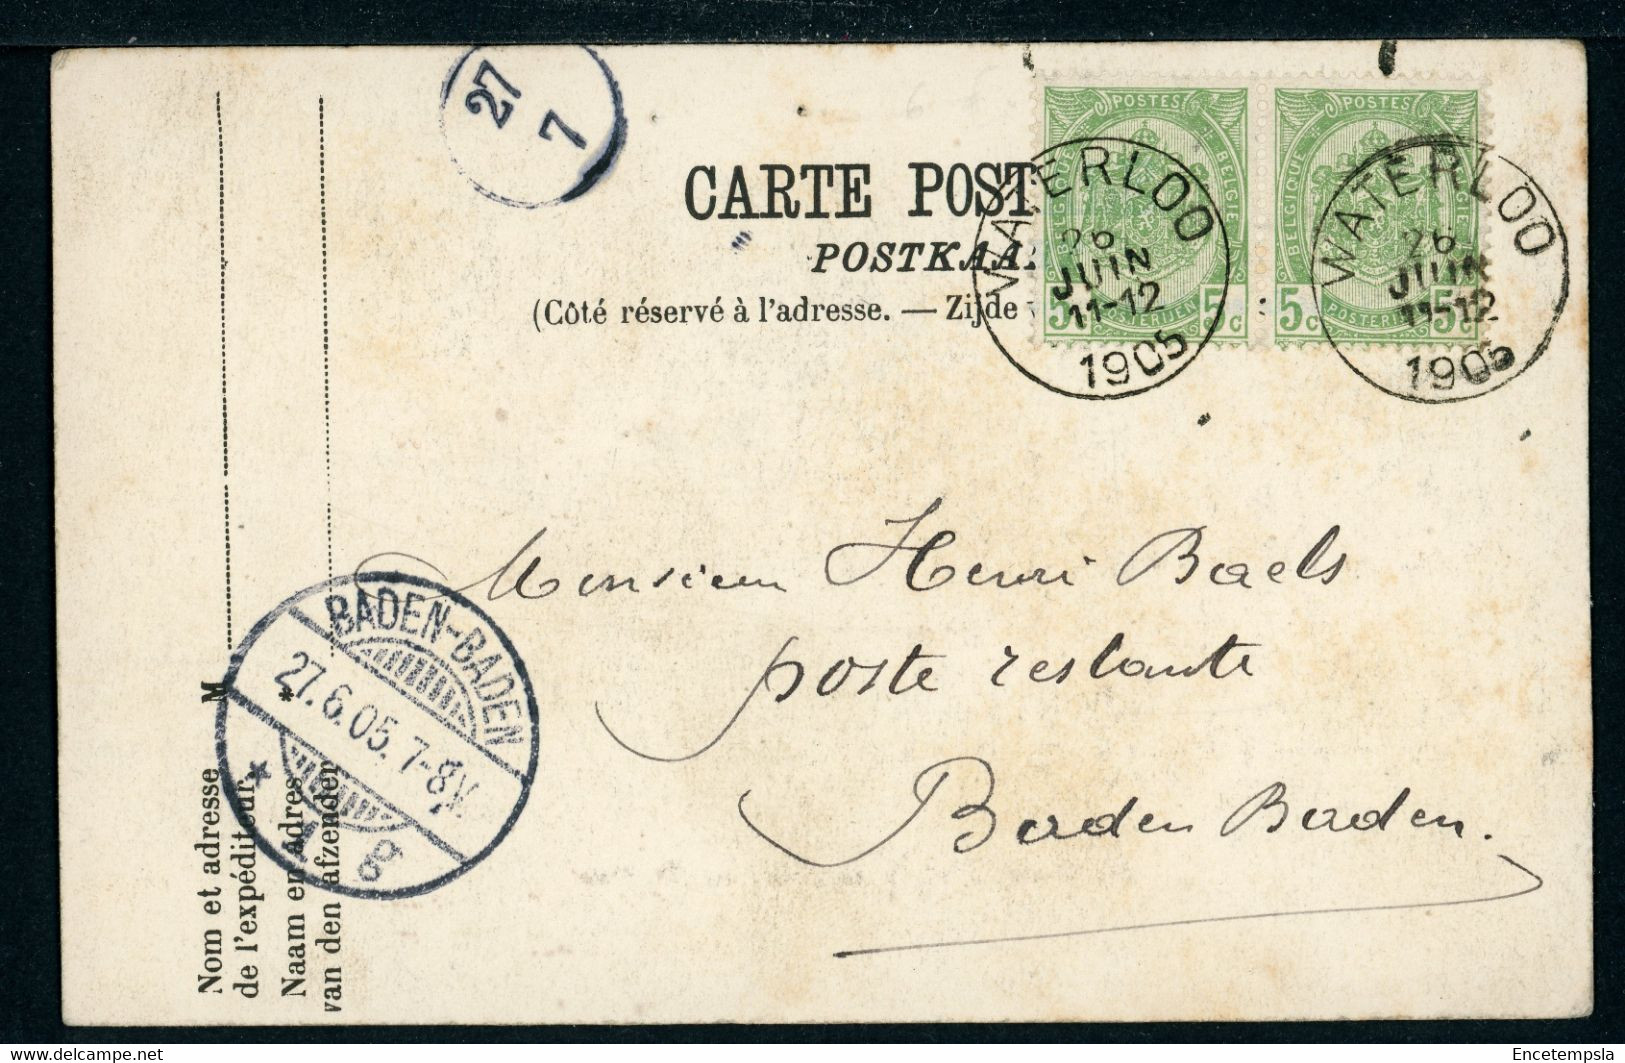 Carte Postale Adressée à HENRI BAELS Ou ANNA DEVISSCHER - Belgique - Waterloo - L'Aigle Expirant De Gérôme (CP22340OK) - Waterloo